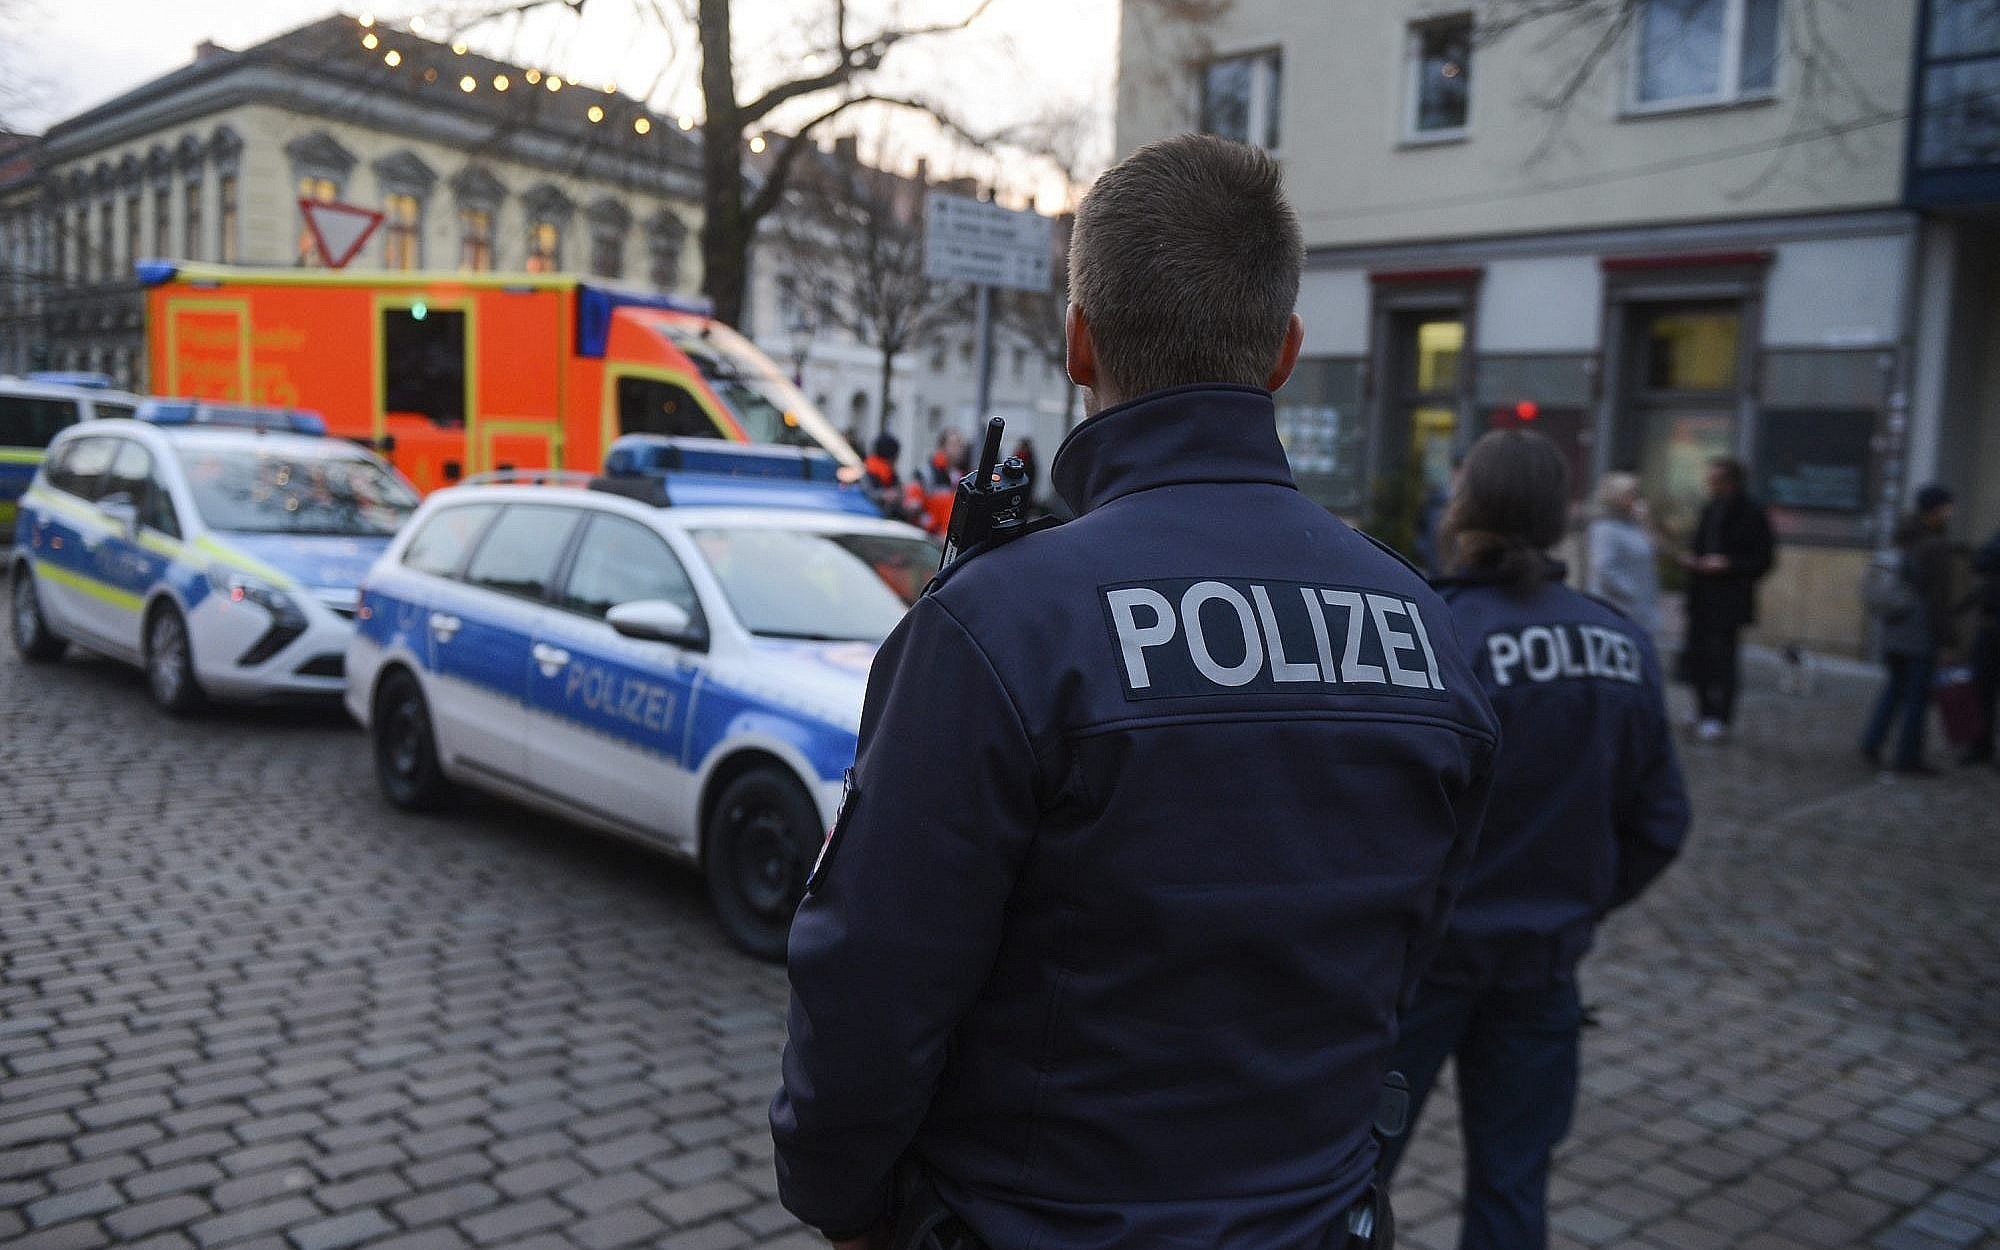 Γερμανία: Τρείς νεκροί από επίθεση με μαχαίρι στην πόλη Βίρτσμπουργκ (upd)